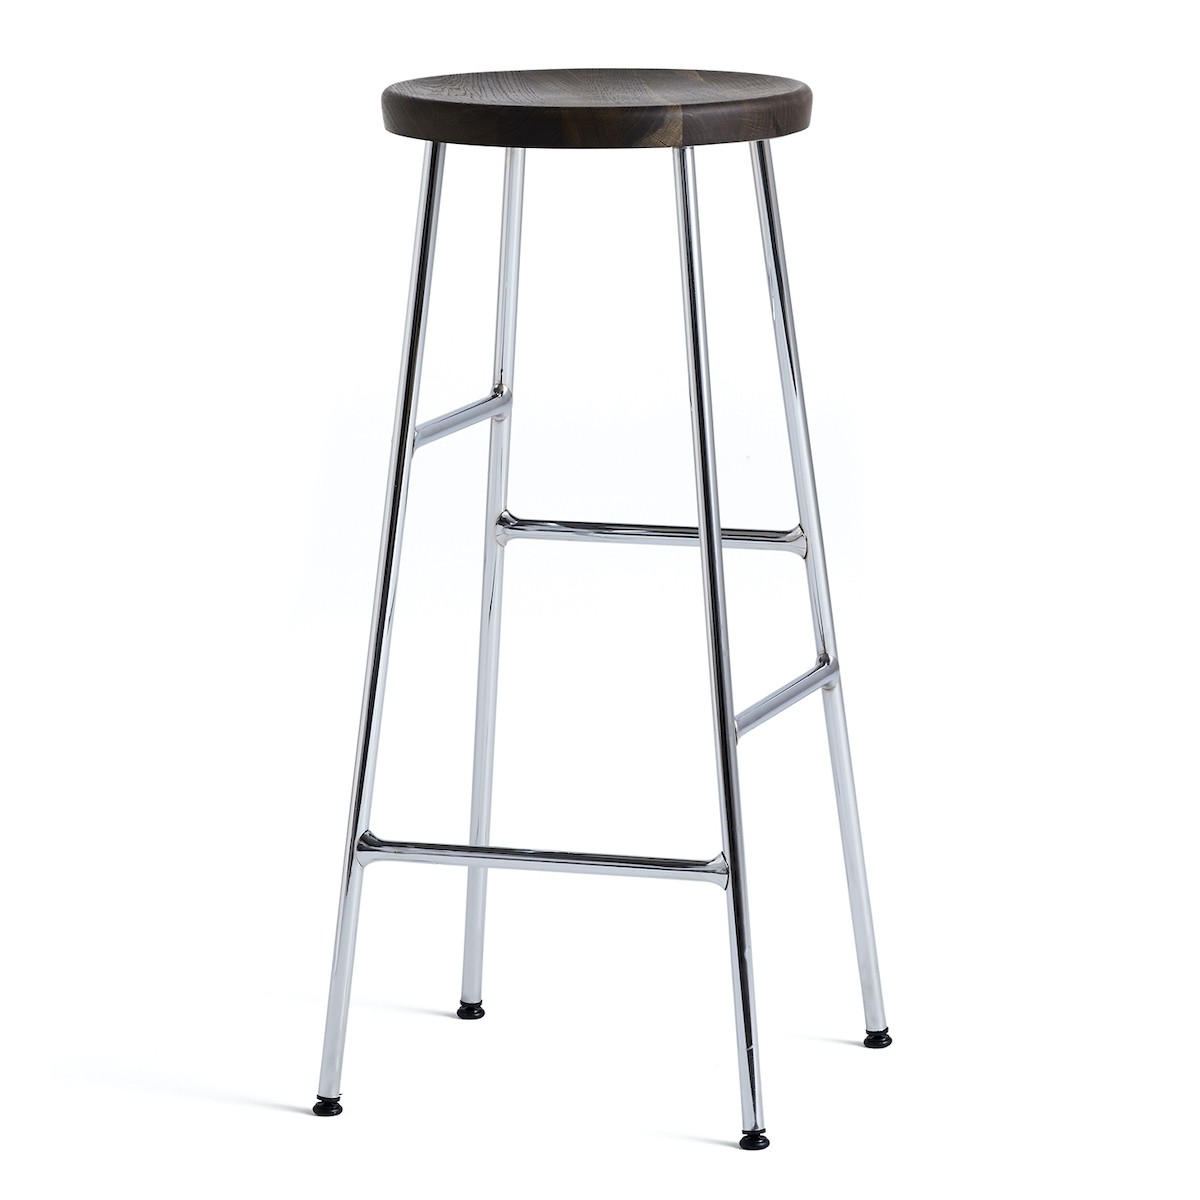 H75 - smoked oak + chromed steel - Cornet bar stool